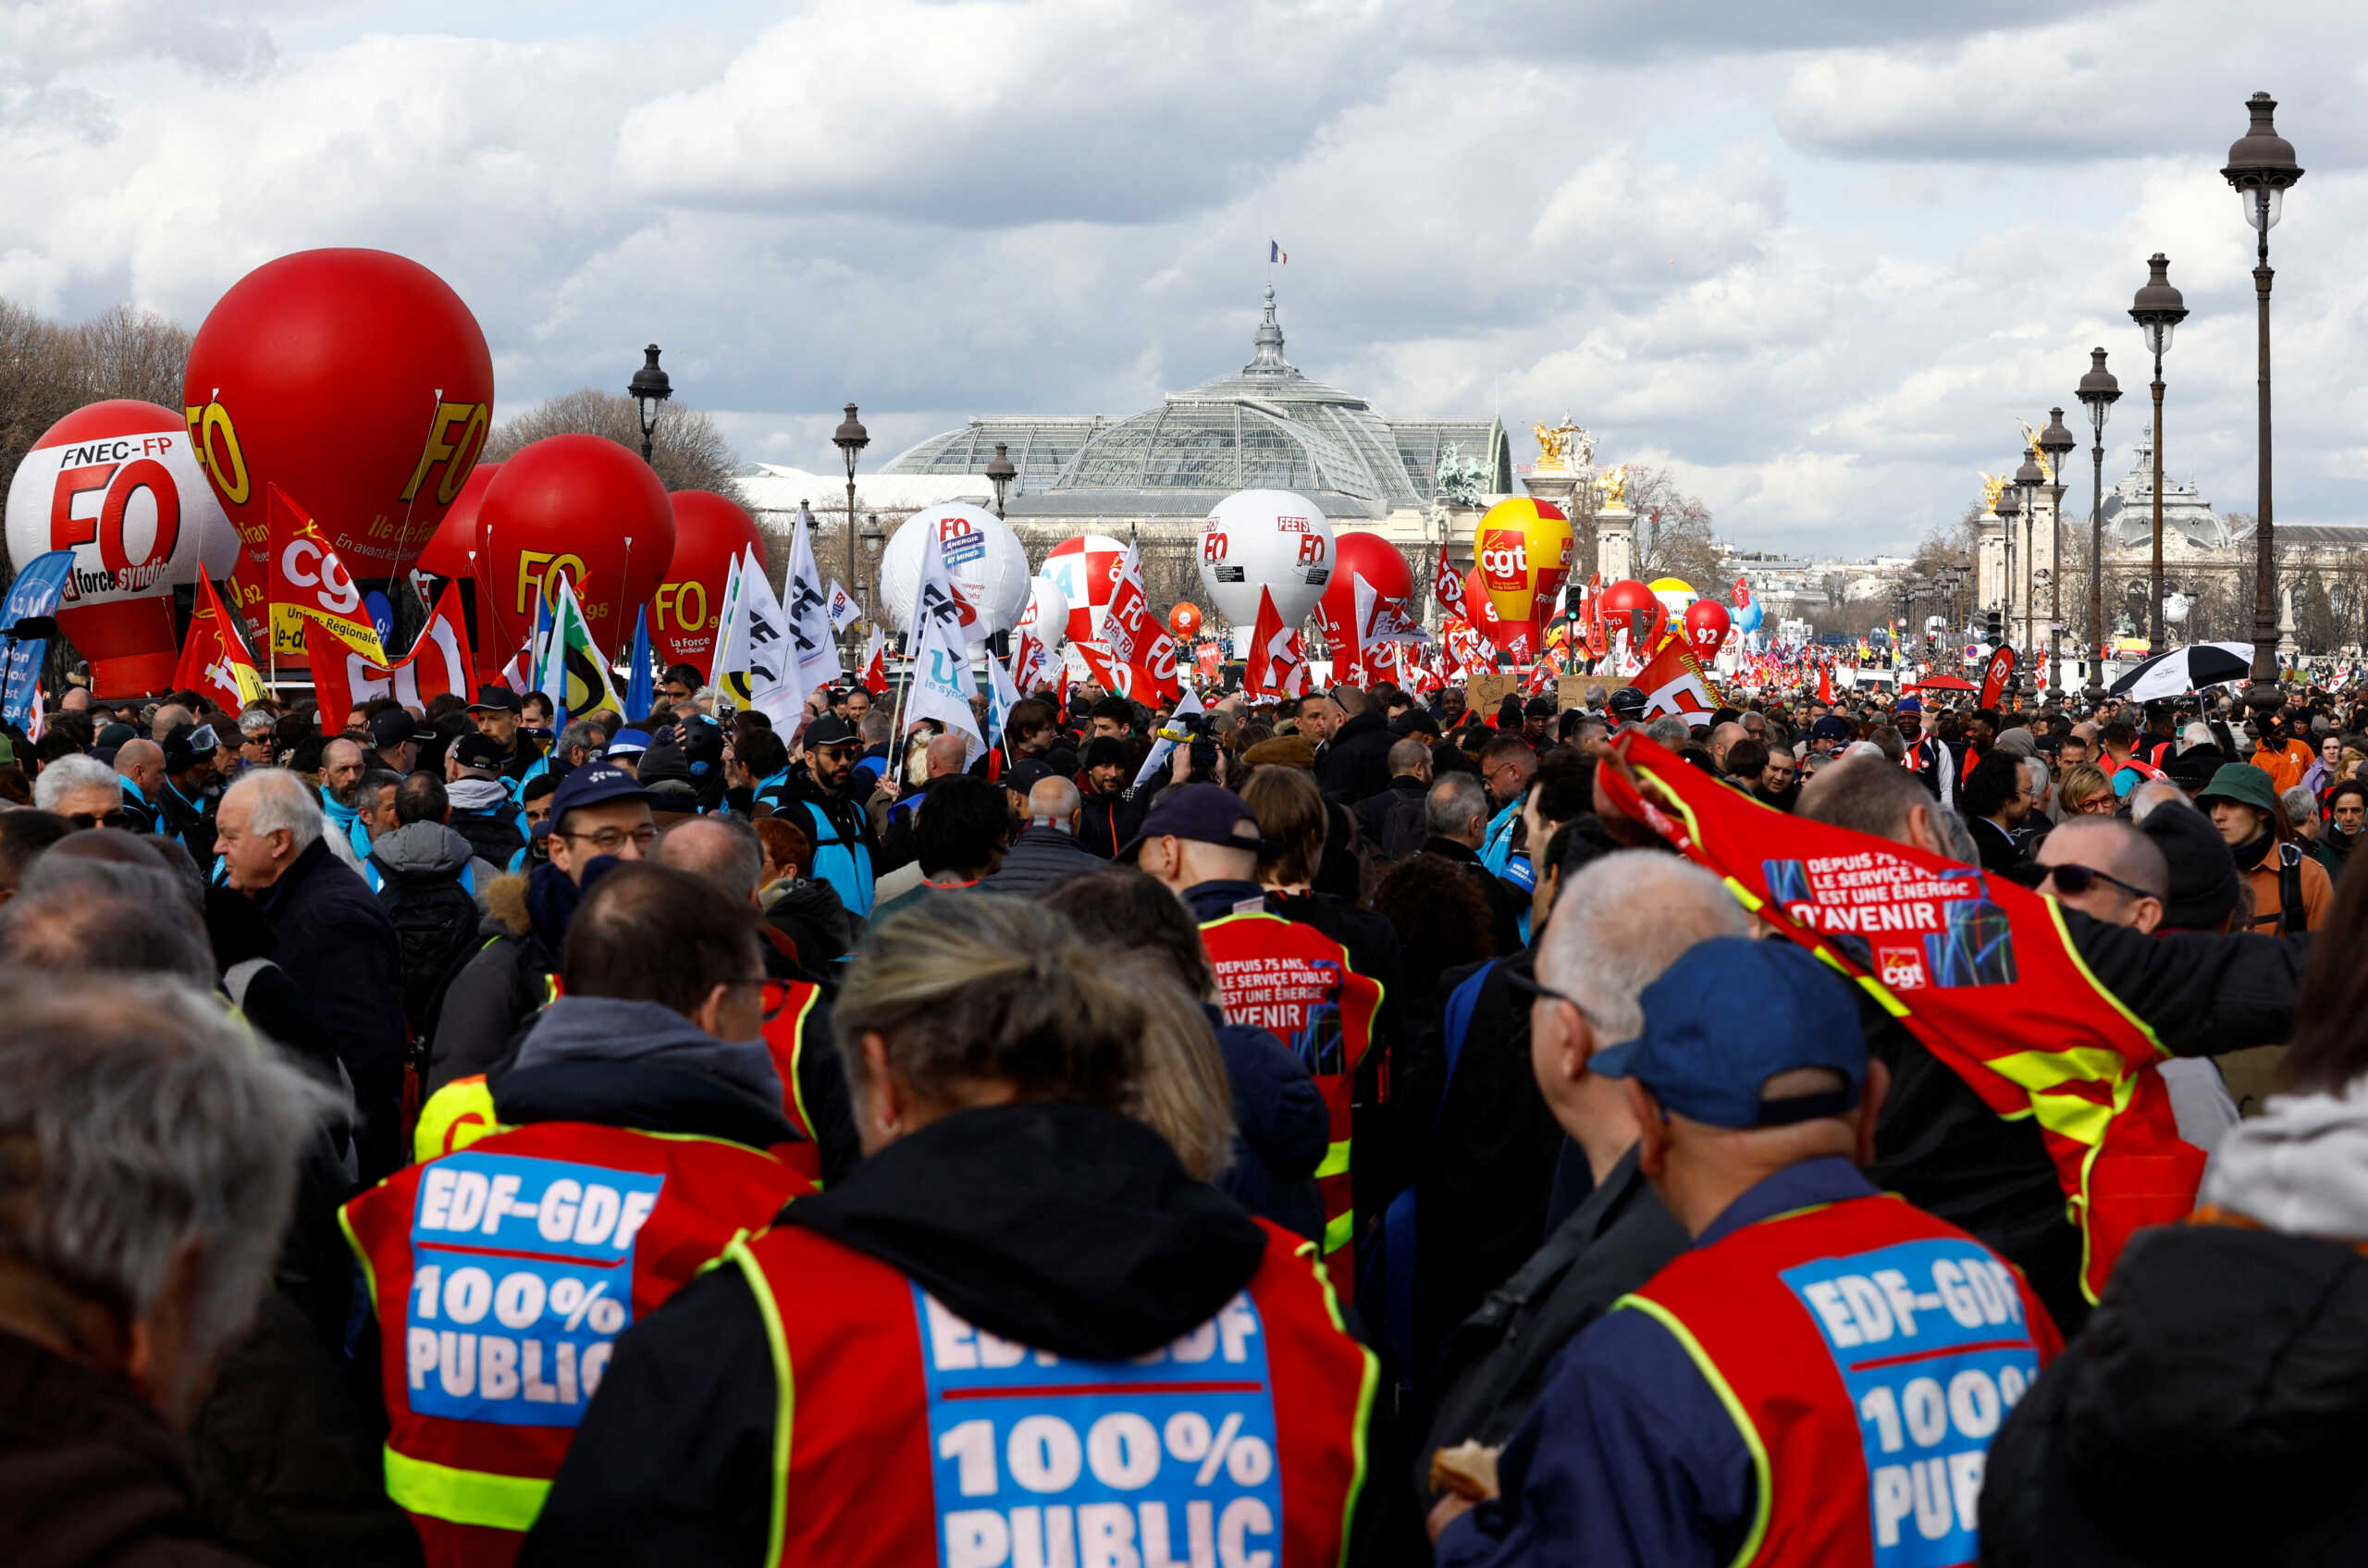 Γαλλία: Η Γερουσία υπερψήφισε συμβιβαστικό κείμενο για τα όρια ηλικίας για συνταξιοδότηση εν μέσω διαδηλώσεων